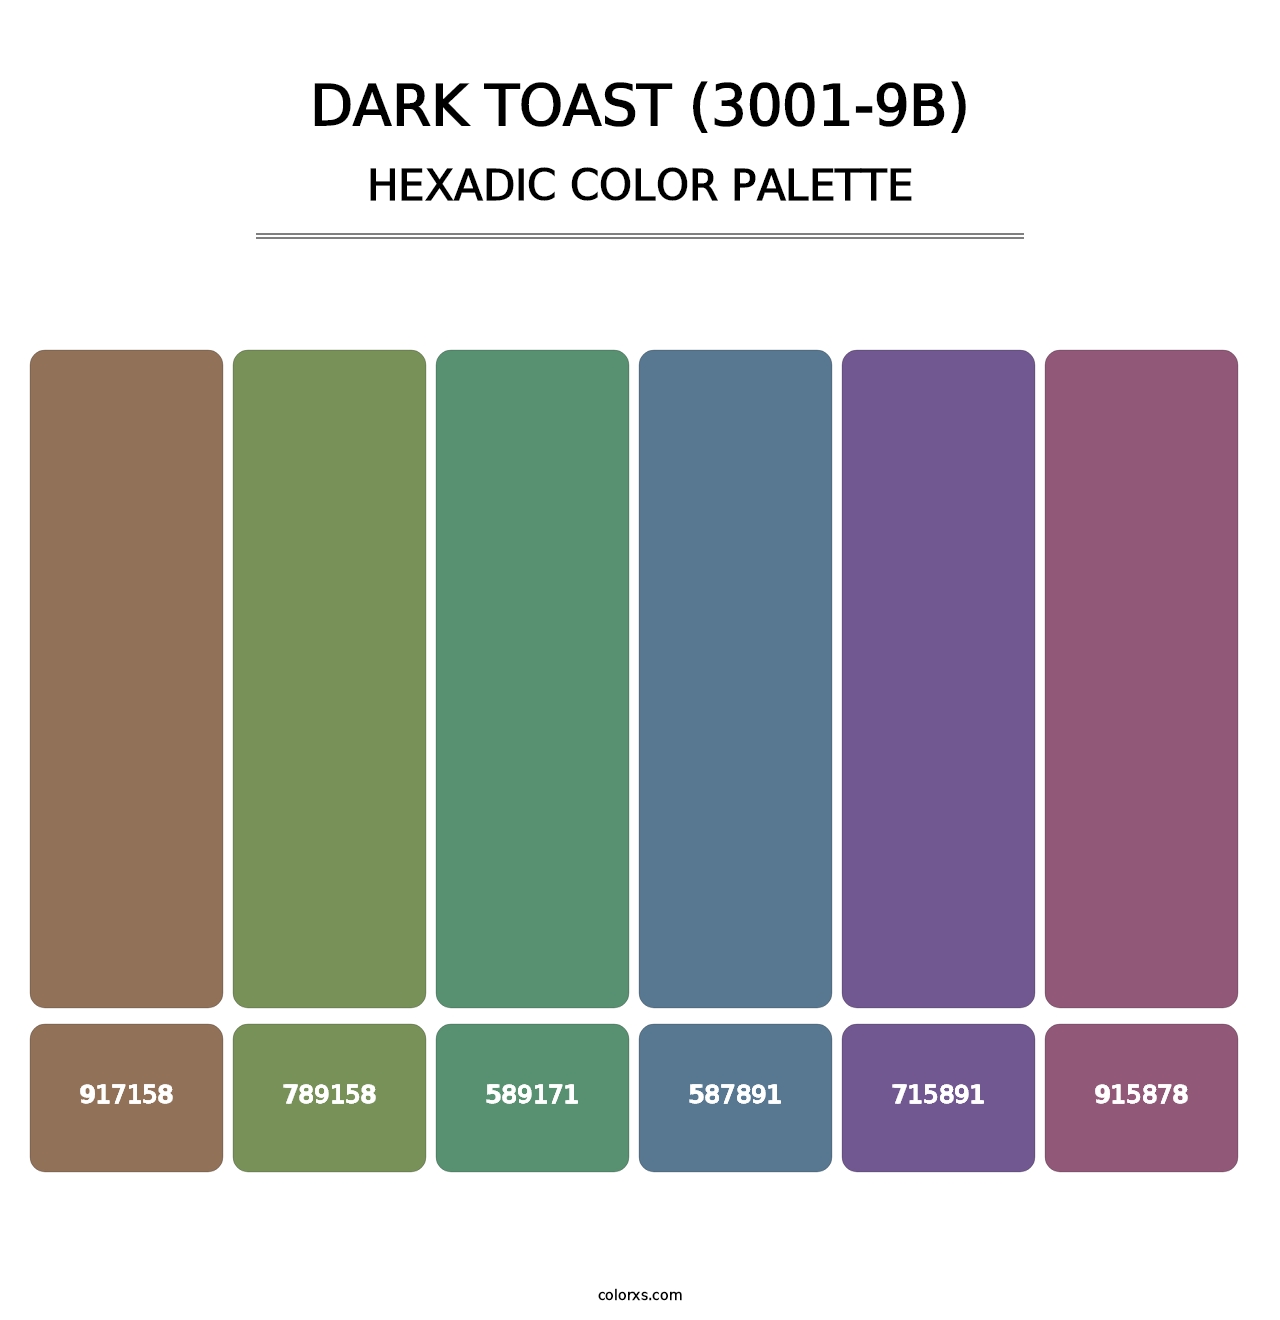 Dark Toast (3001-9B) - Hexadic Color Palette